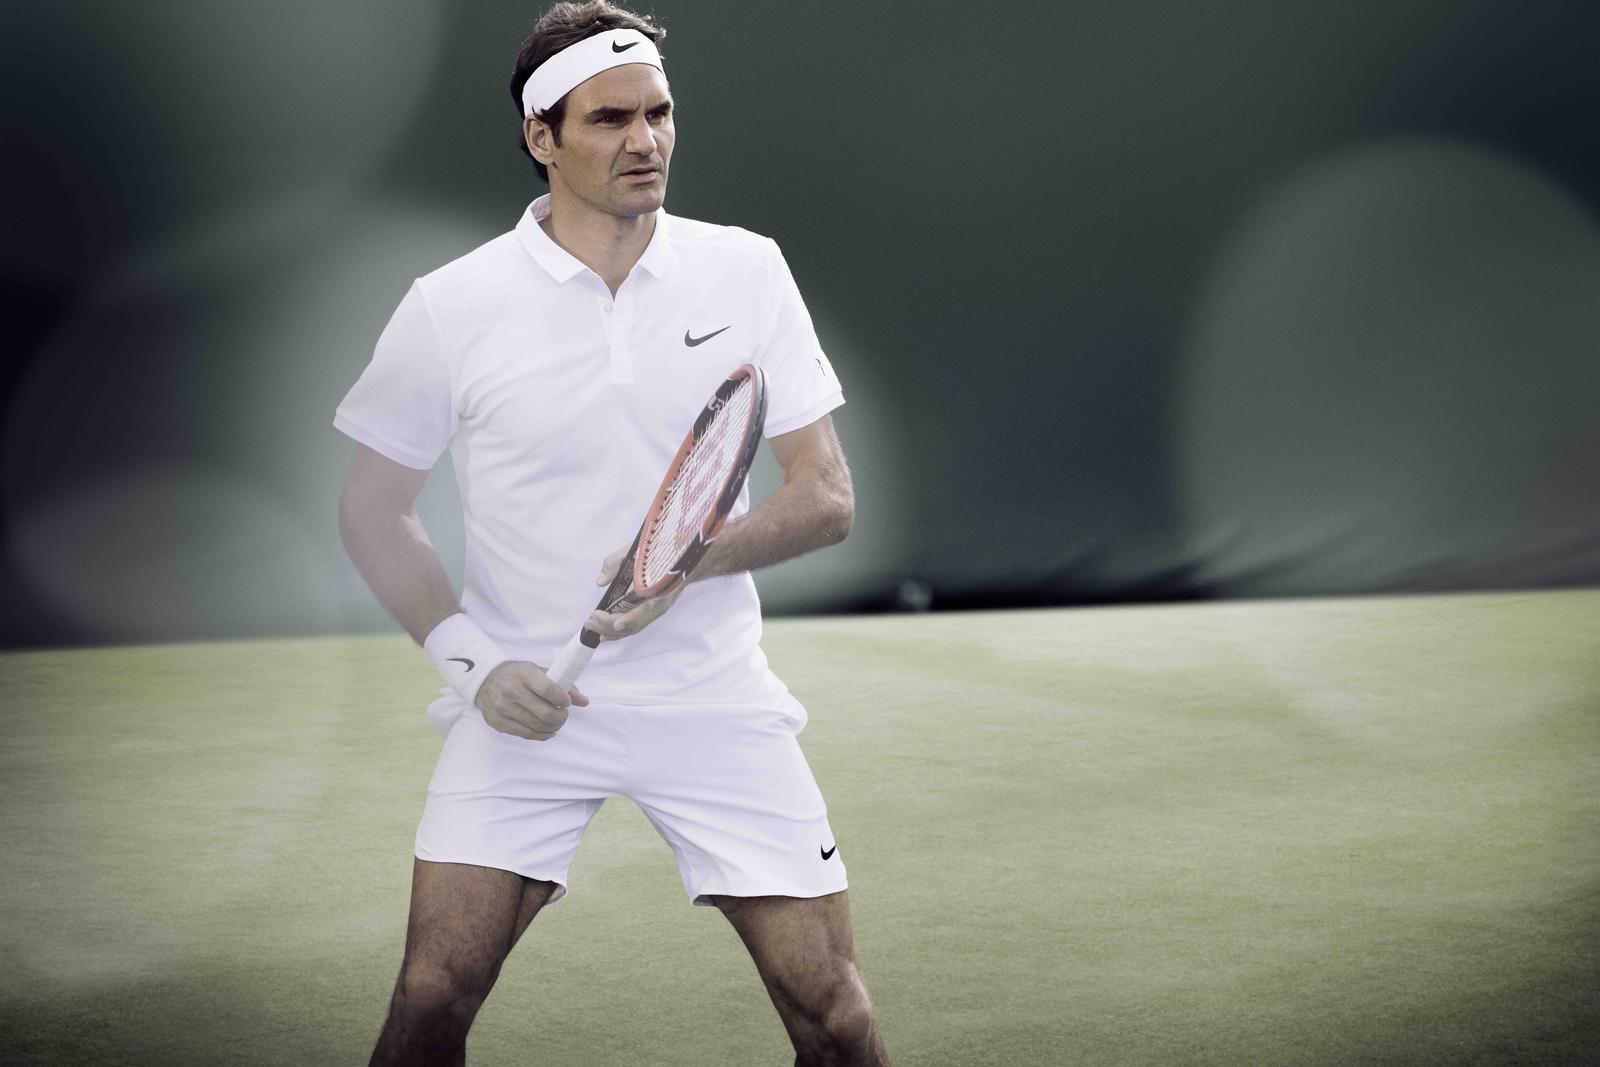 Roger_Federer_NikeCourt_2_native_1600.jpg